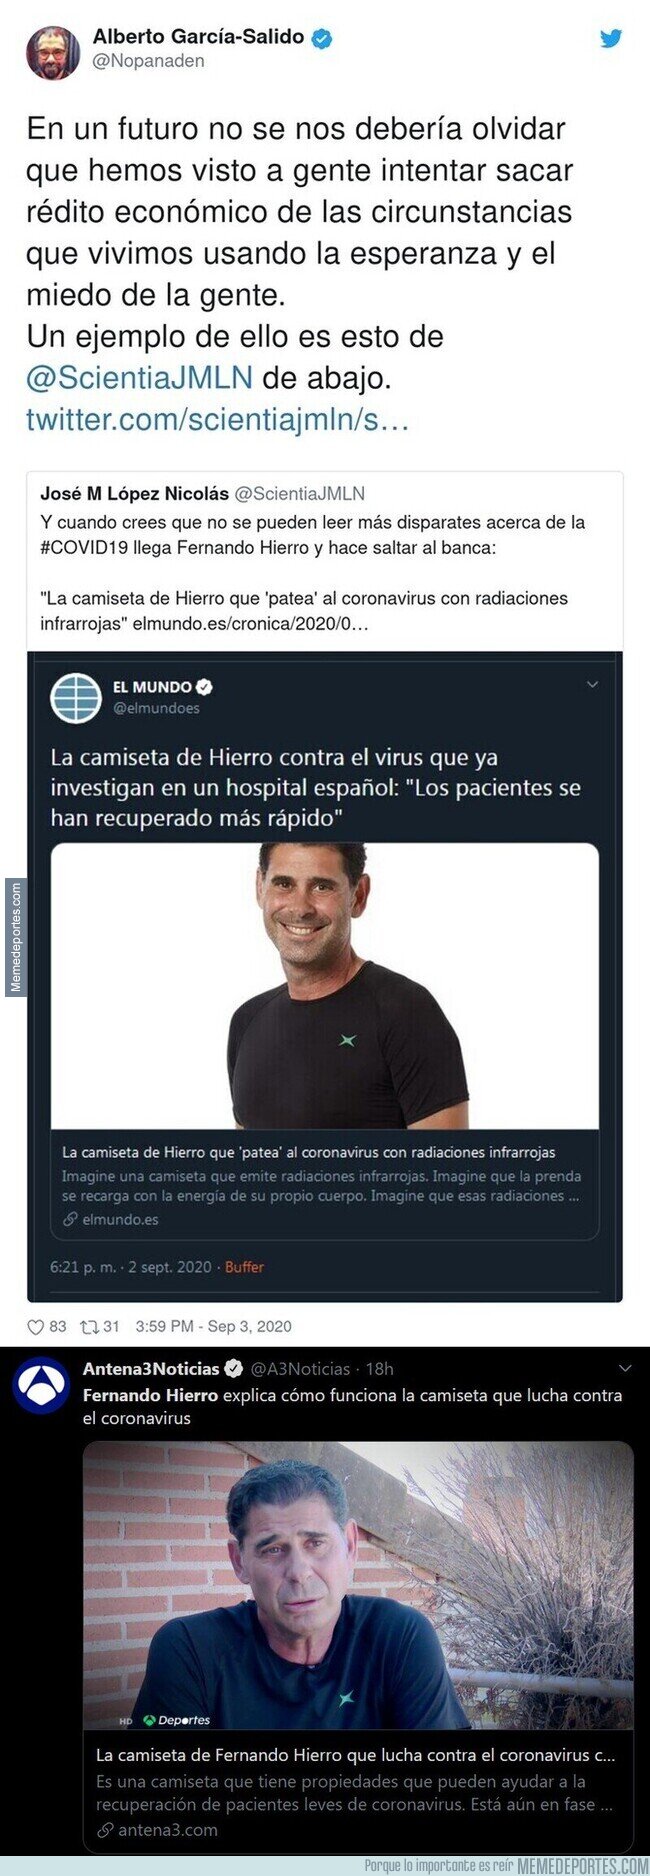 1114902 - Fernando Hierro, exjugador del Real Madrid, hace el ridículo vendiendo este producto contra el coronavirus